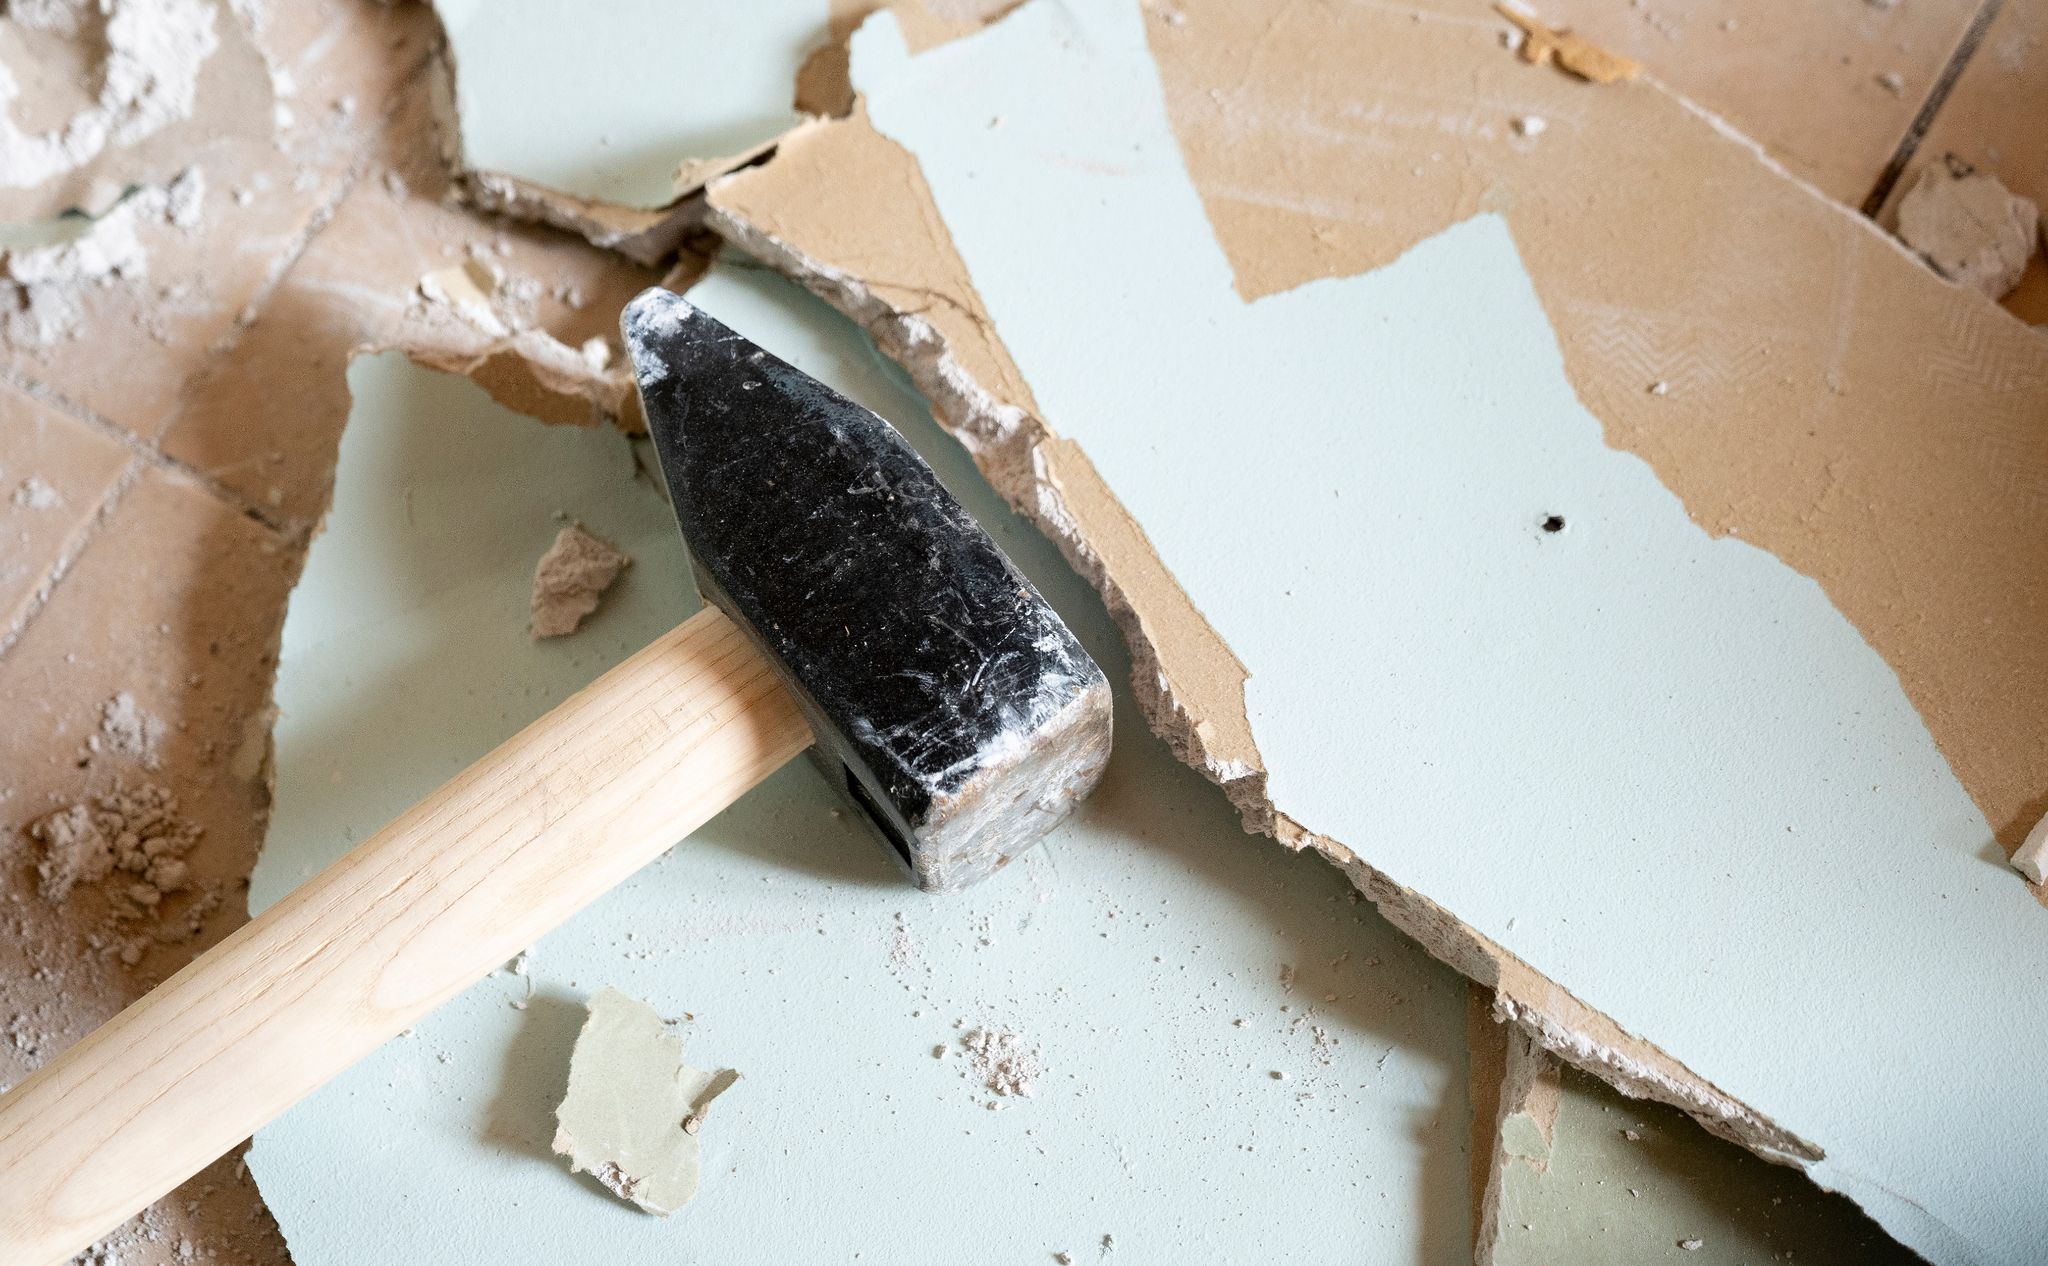 Nicht voreilig zum Vorschlaghammer greifen: Auch dünnere Wände können eine wesentliche tragende Funktion im Haus haben.